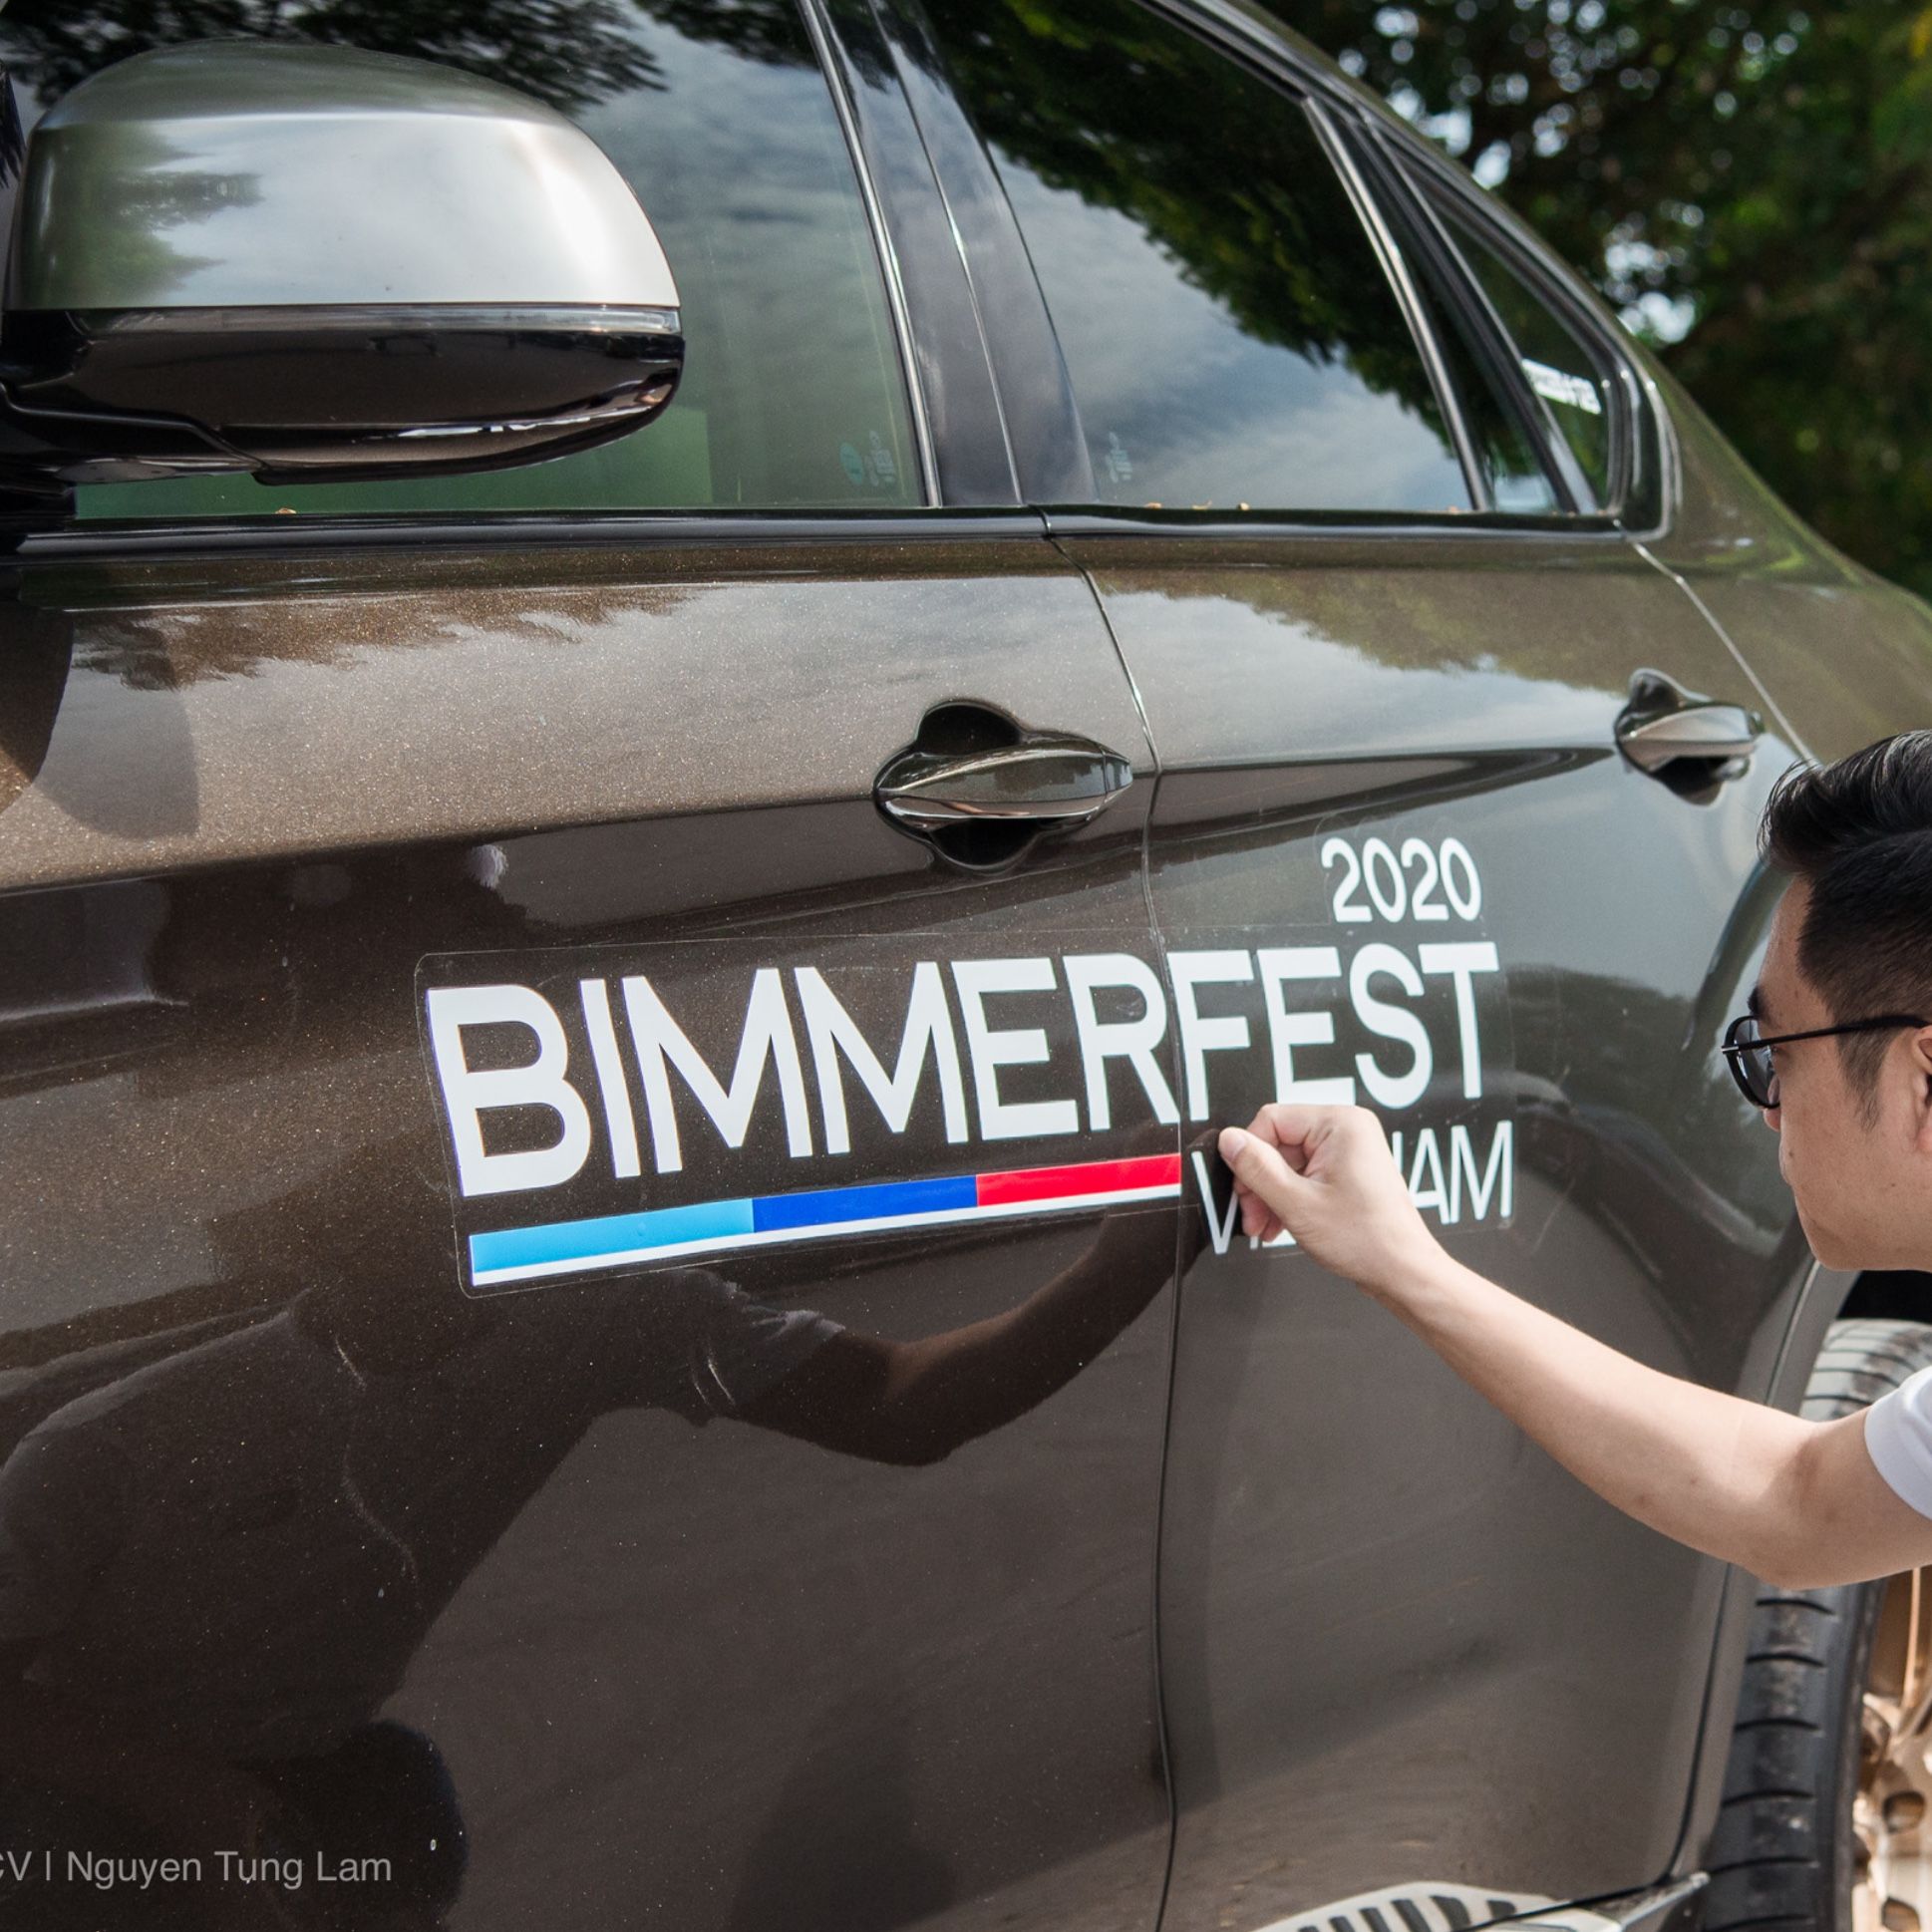 [Gallery] Bimmerfest Vietnam 2020 - Công tác chuẩn bị của đoàn Hà Nội (by Tung Lam Ng)